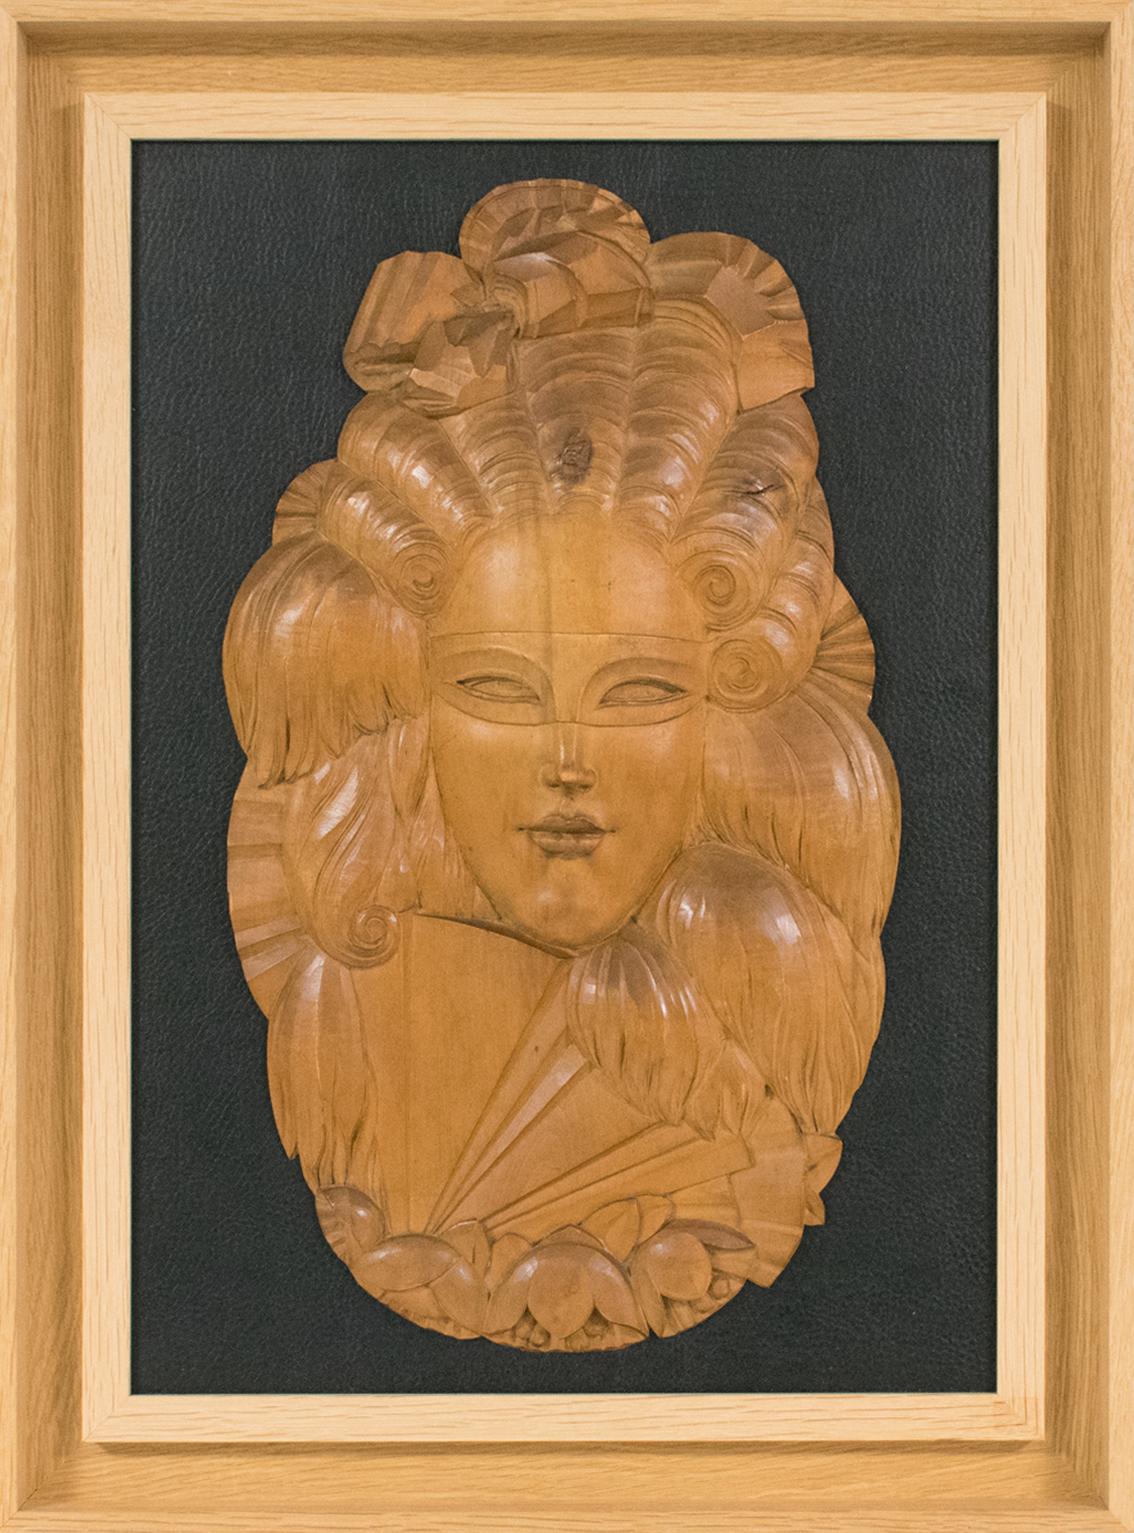 Wandskulptur einer venezianischen Maske aus handgeschnitztem Holz im Art déco-Stil